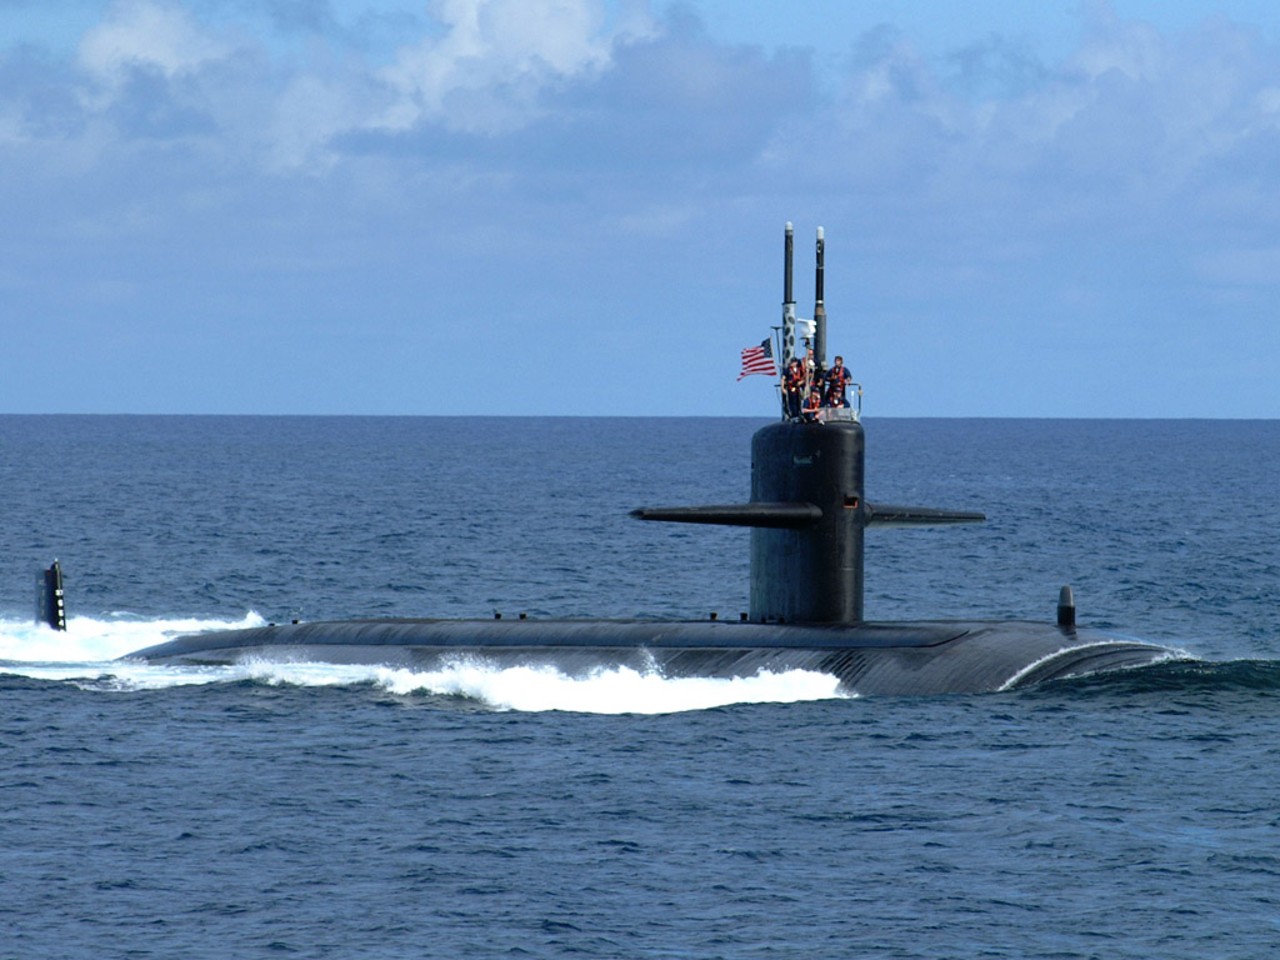 General 1280x960 submarine military vehicle military vehicle